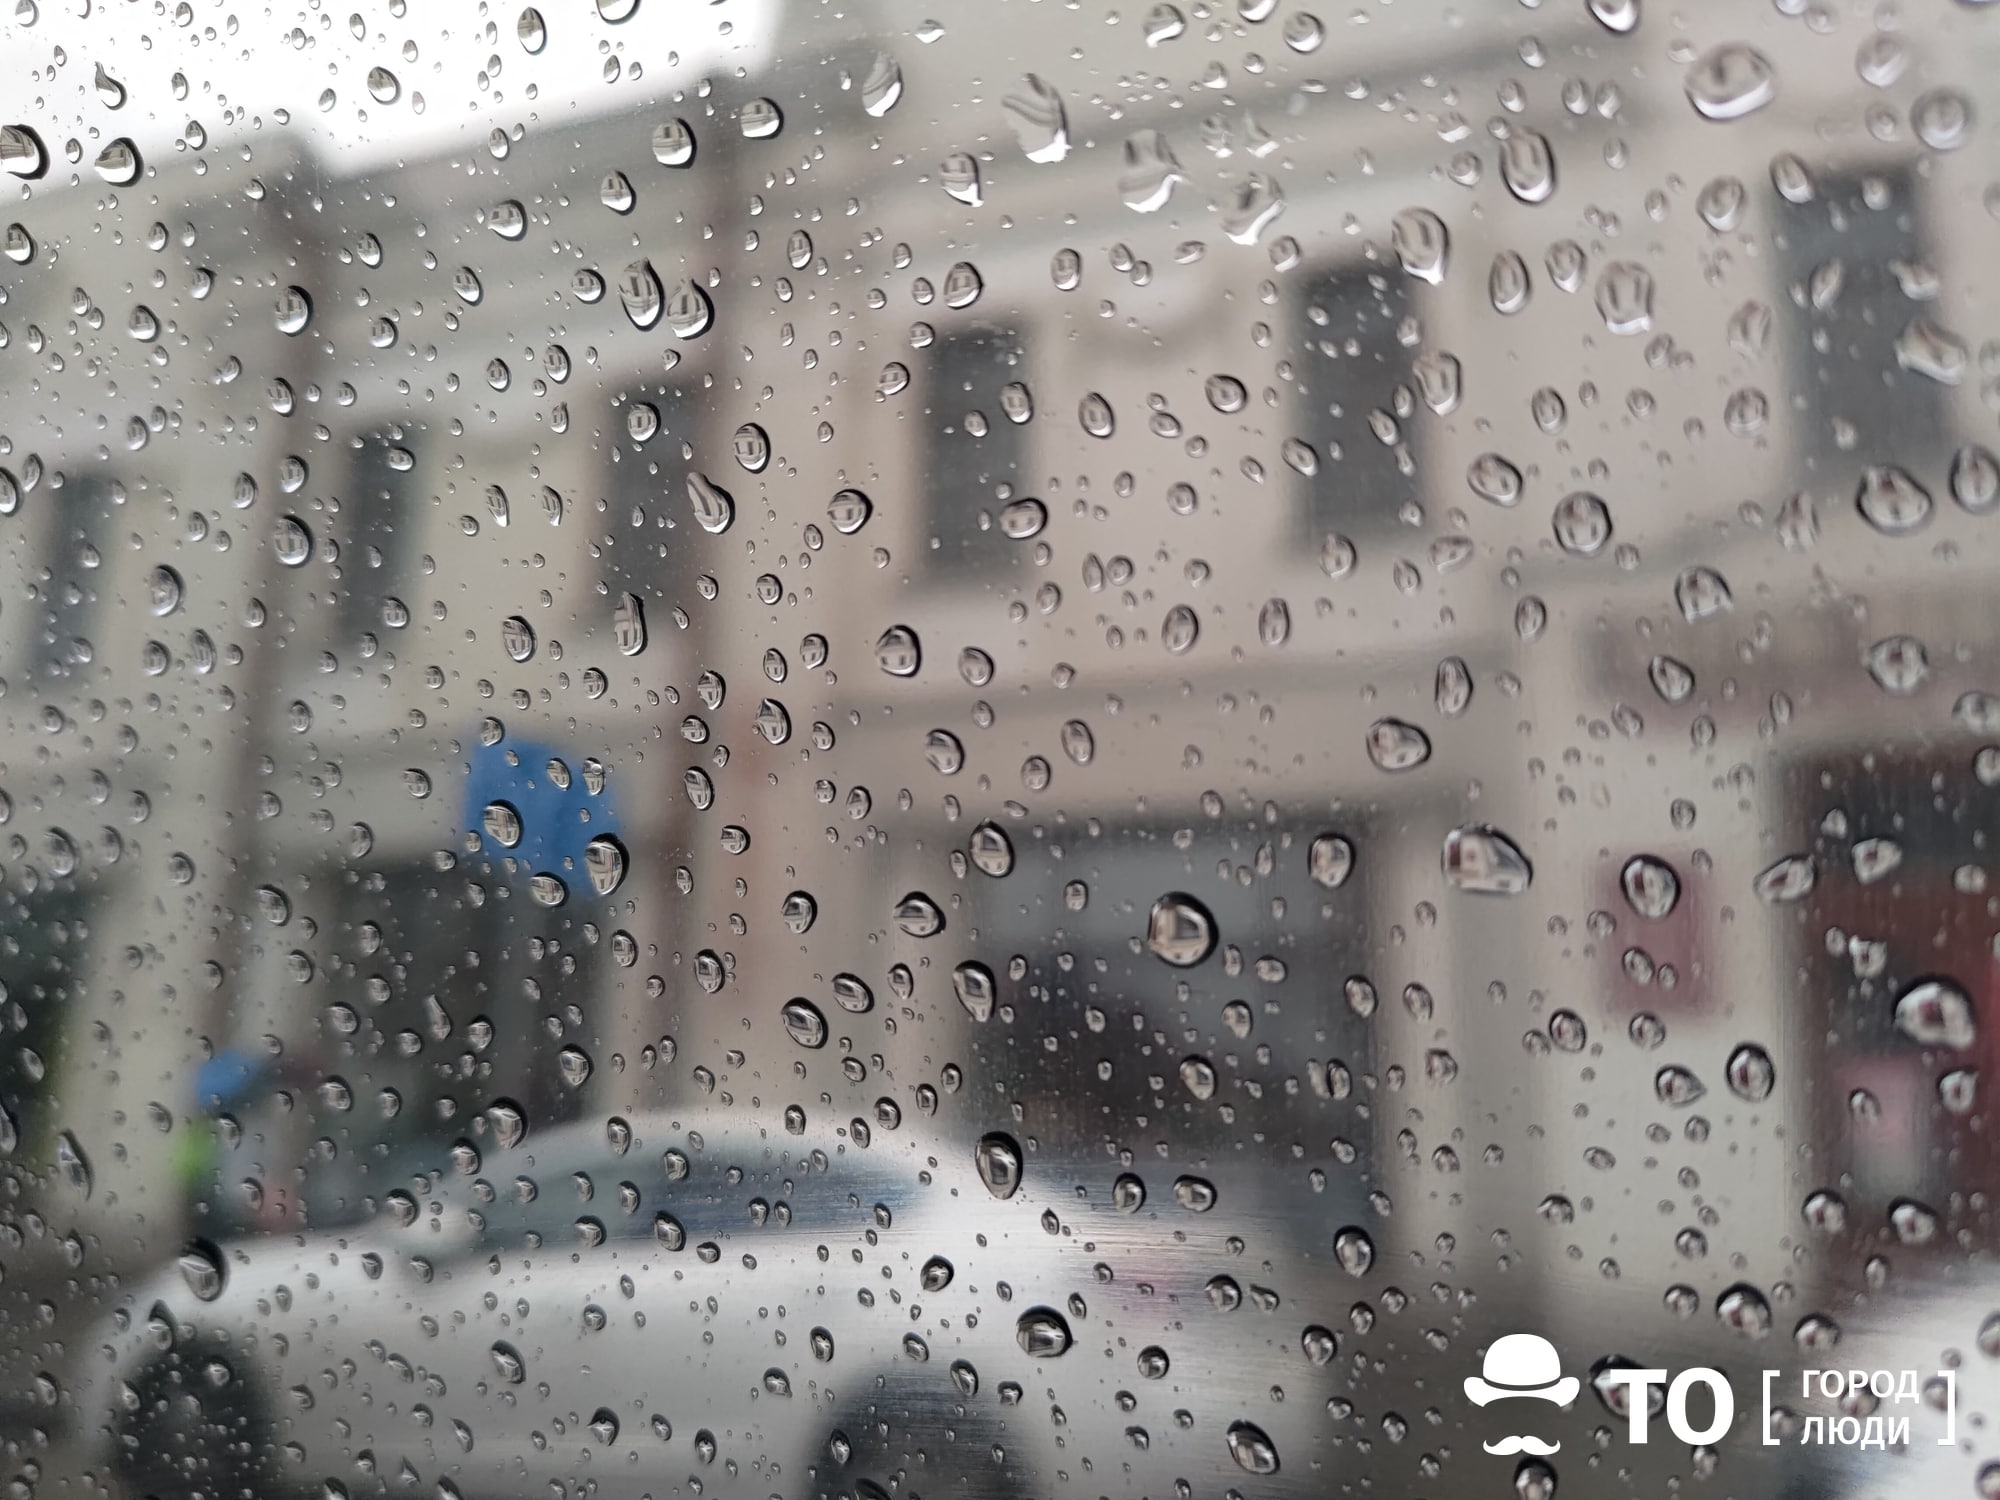 Погода и природа, Томские новости, Томск погода новости выходные интересное дожди грозы ветер Сегодня по Томской области ожидаются сильные дожди